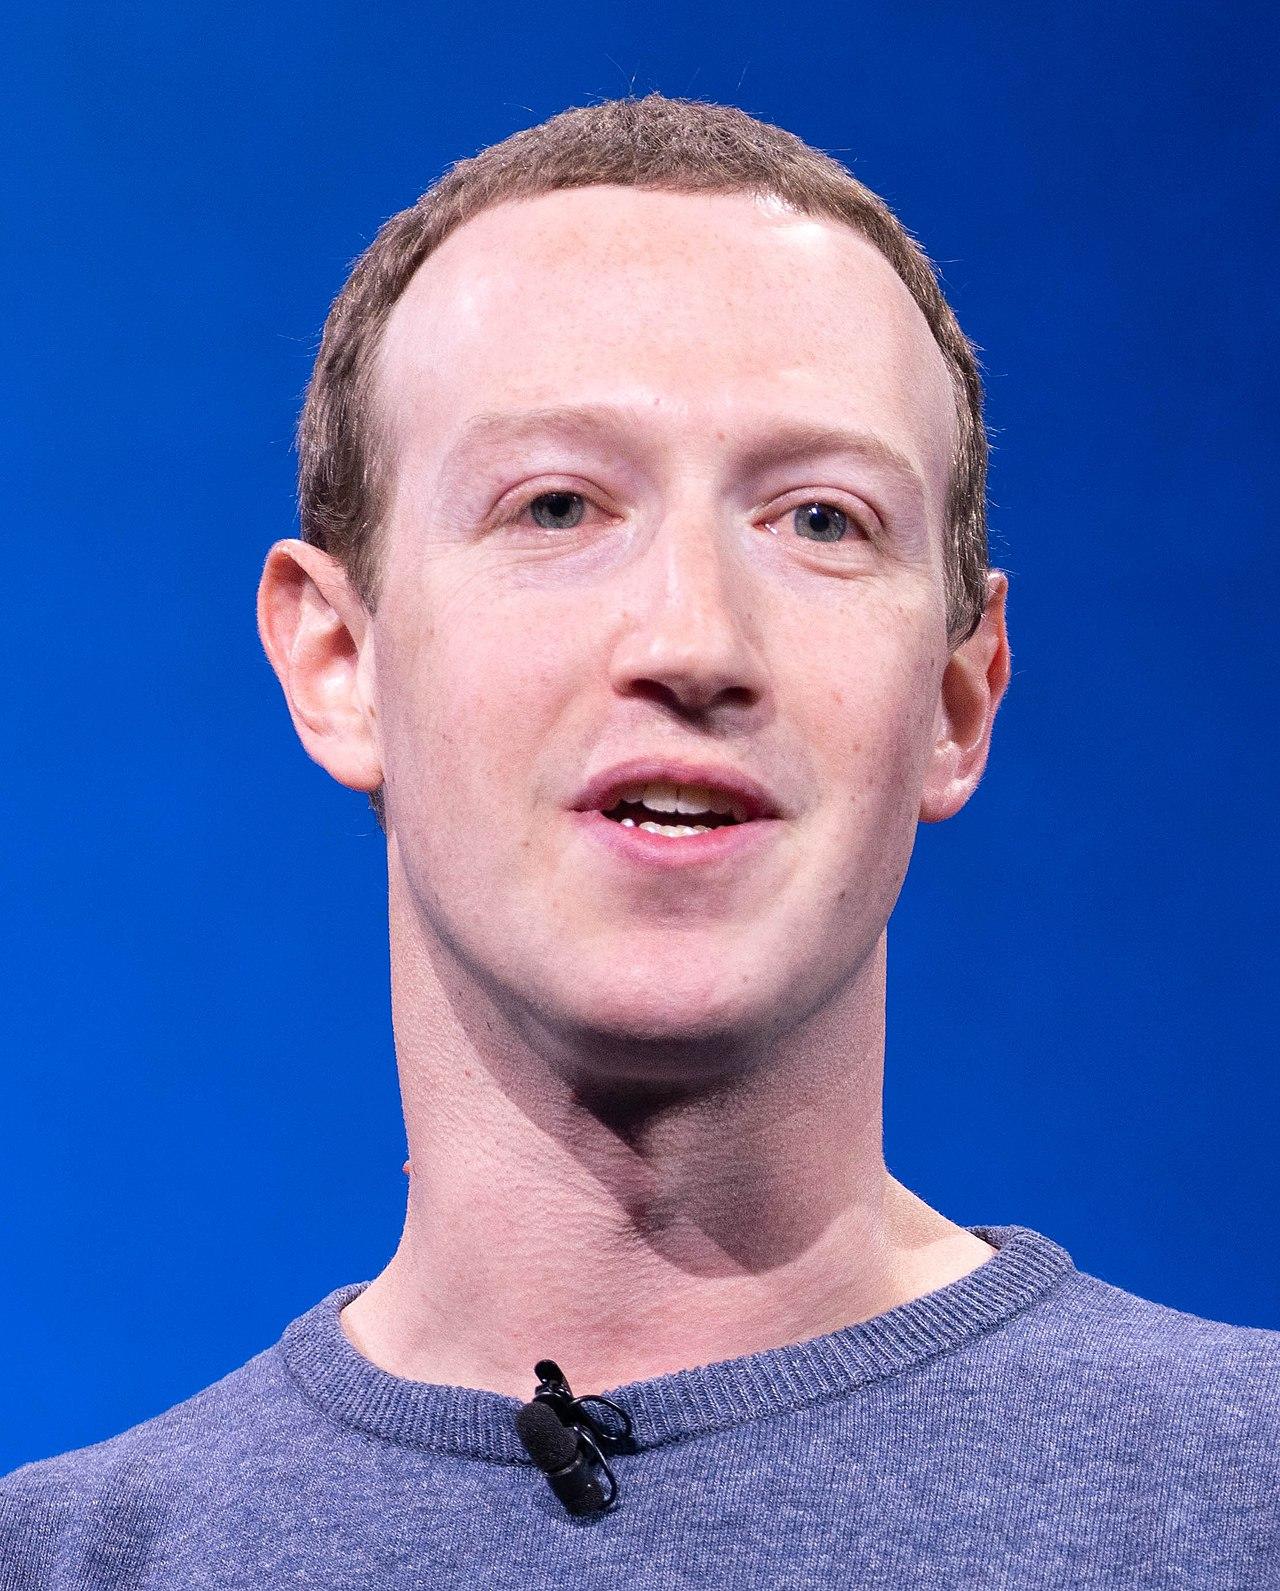 Mark zuckerberg facebook